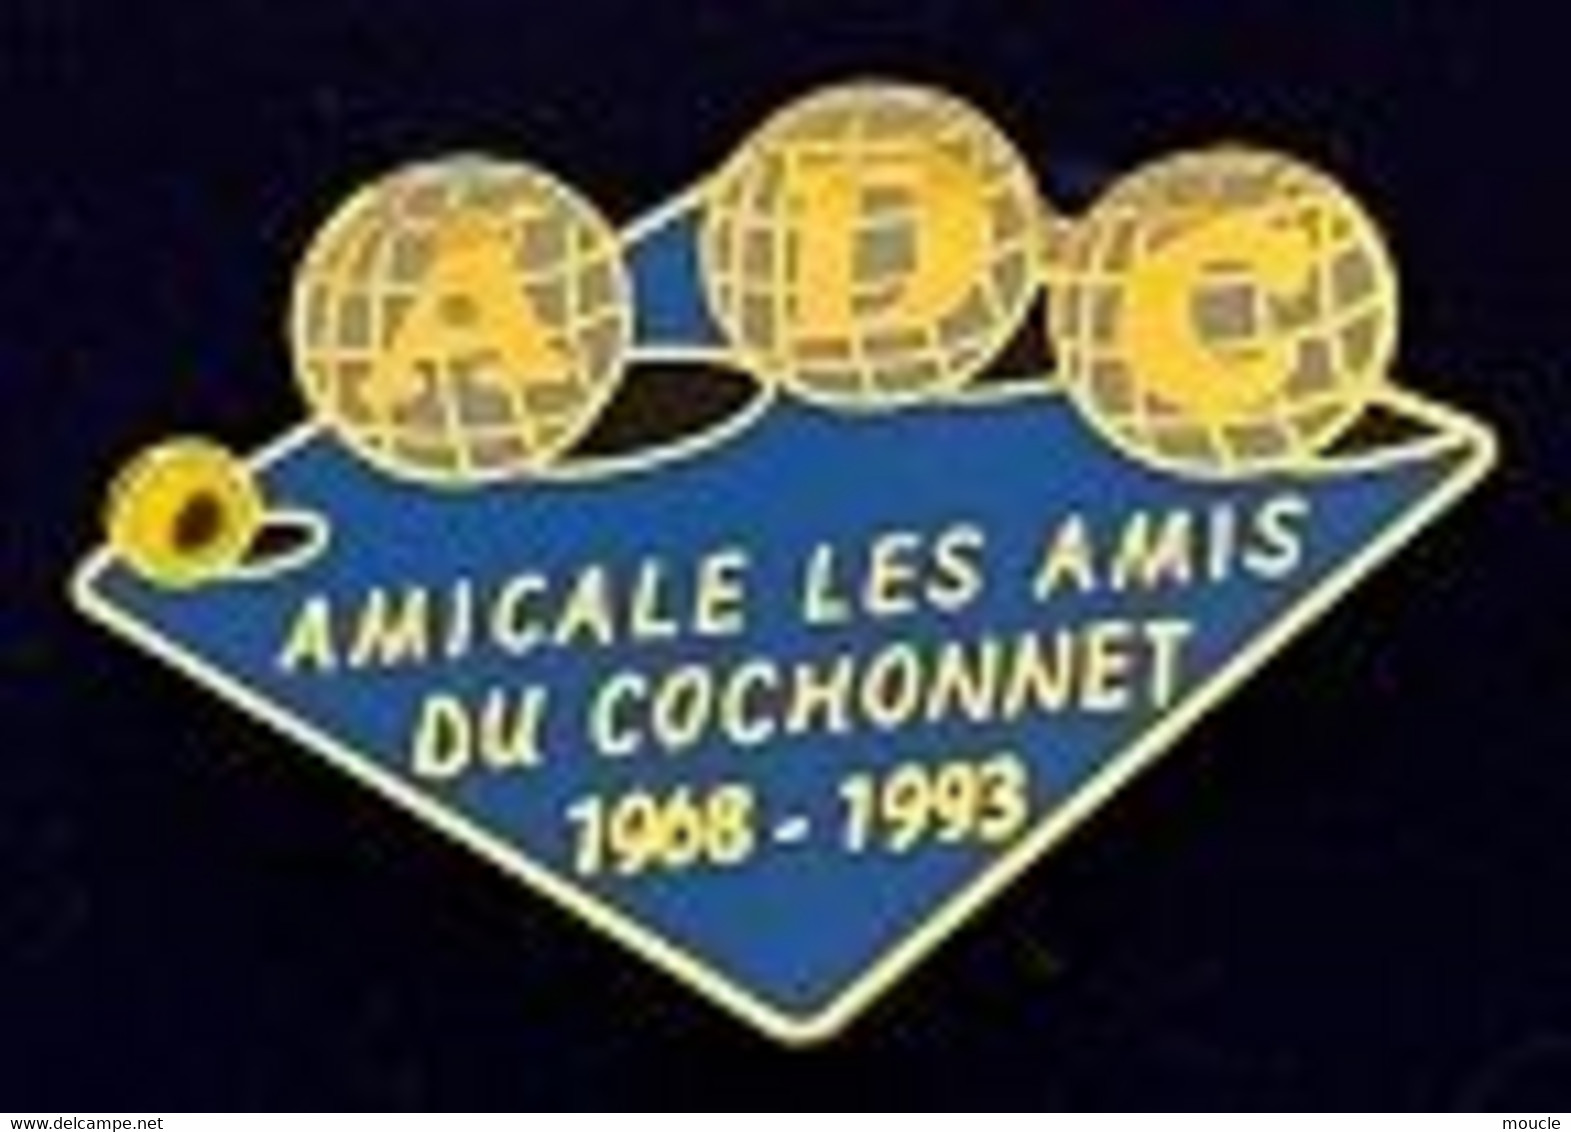 AMICALE LES AMIS DU COCHONNET - 1968 / 1993 - BOULES - PETIT - EGF - ADC - SUISSE - SVIZZERA - SCHWEIZ - (29) - Pétanque